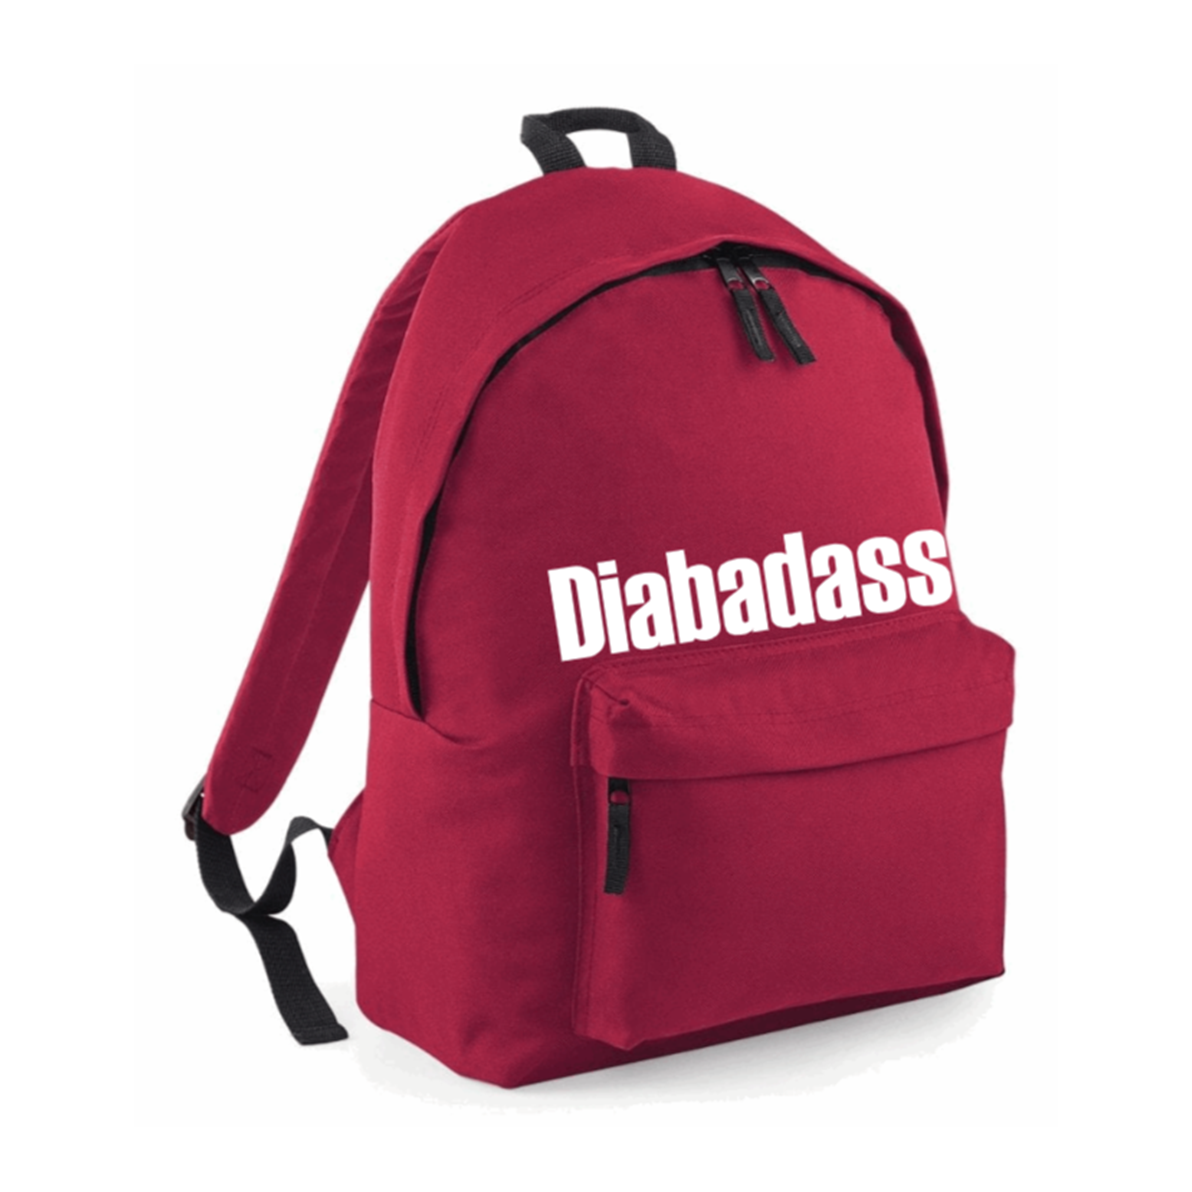 Diabadass Backpack